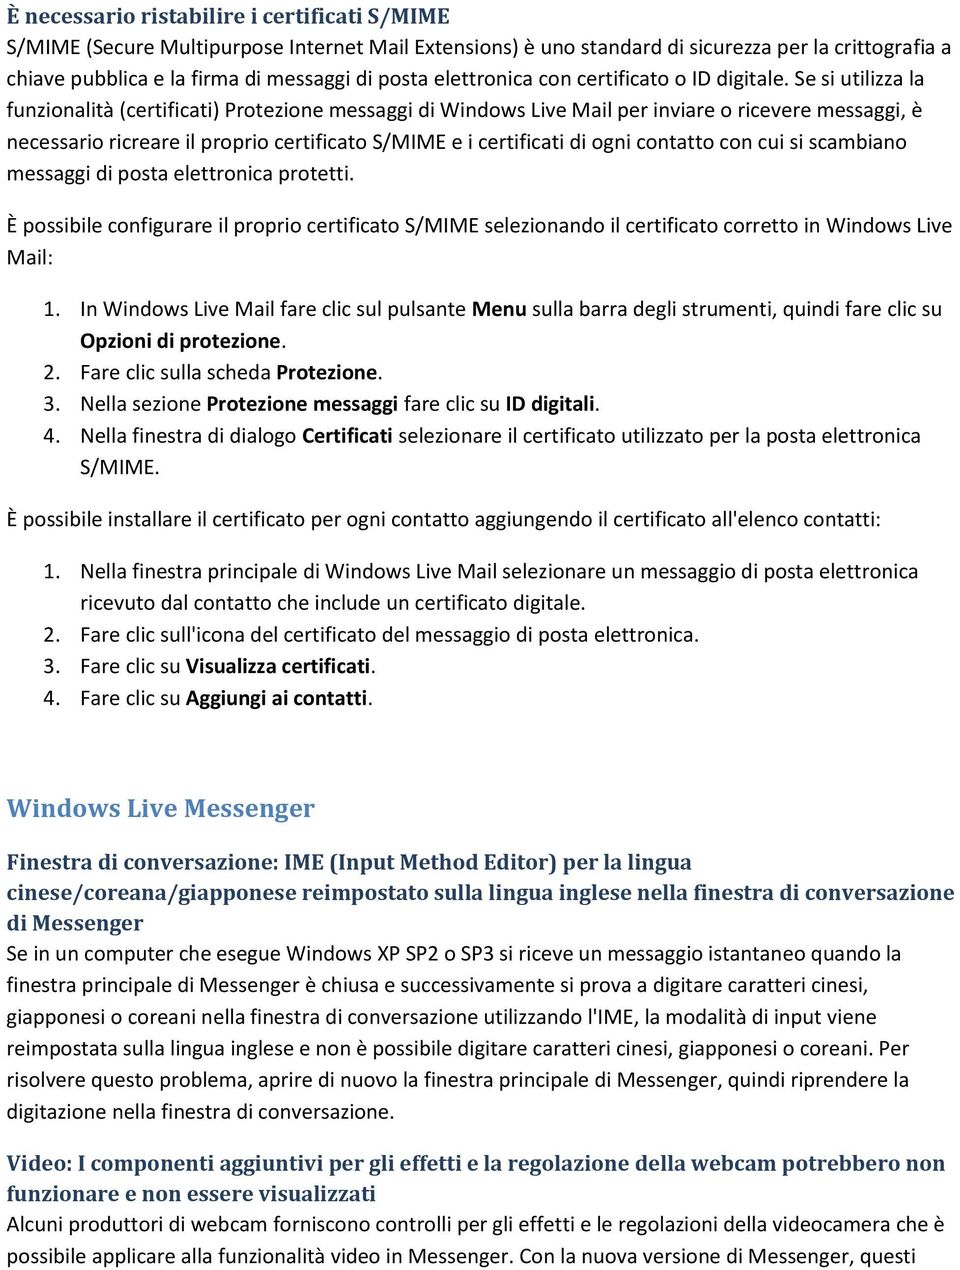 Se si utilizza la funzionalità (certificati) Protezione messaggi di Windows Live Mail per inviare o ricevere messaggi, è necessario ricreare il proprio certificato S/MIME e i certificati di ogni